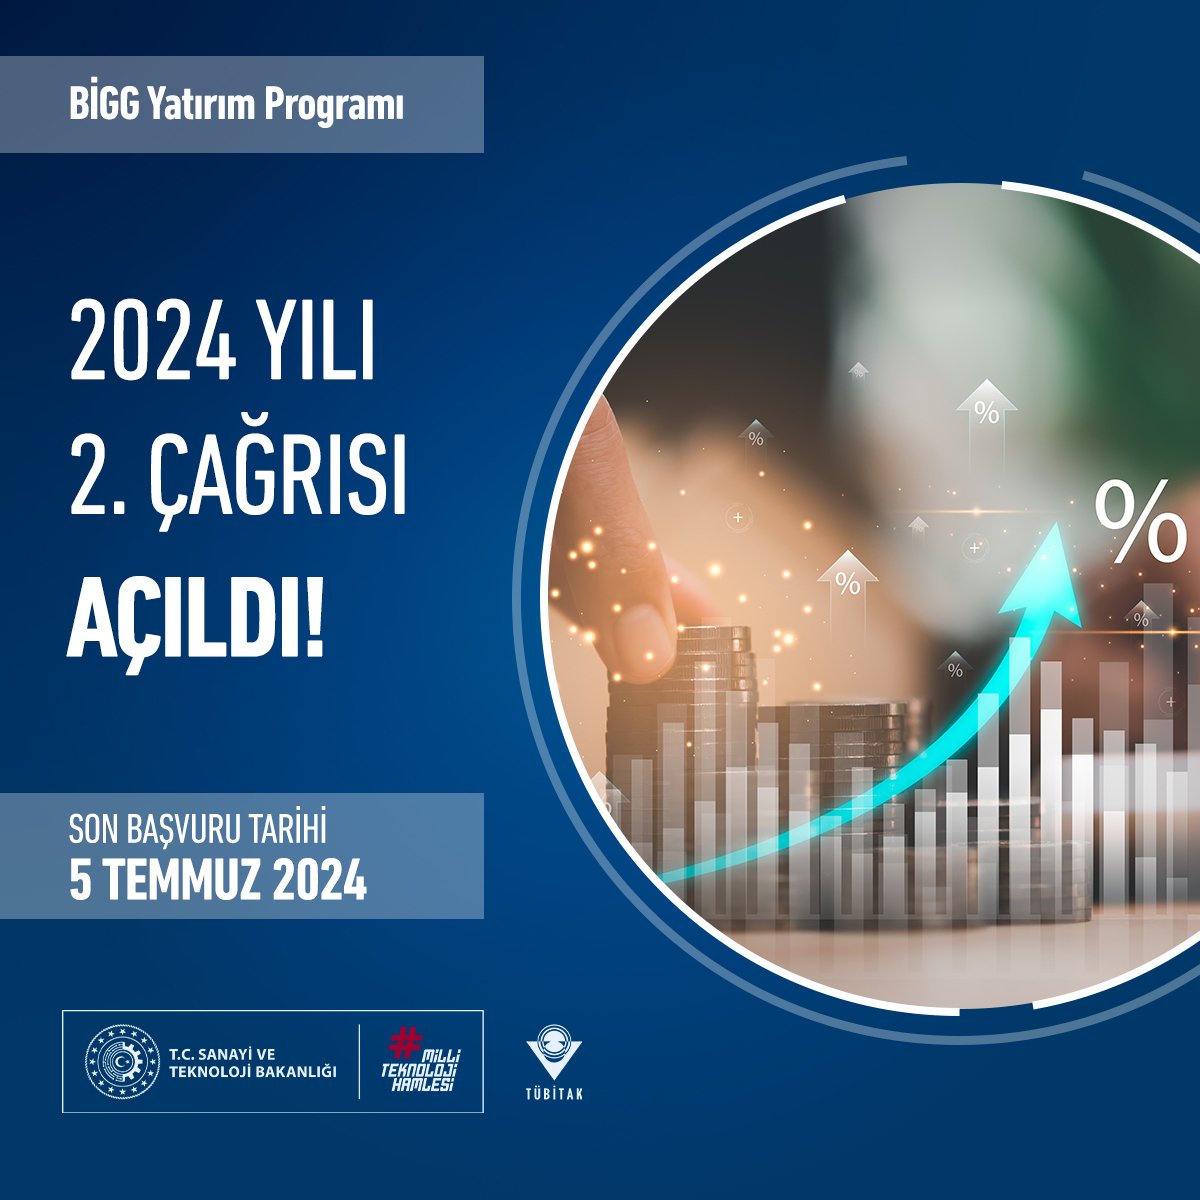 📢 Türkiye'nin İlk Yatırım Tabanlı Girişimcilik Destek Programı olan BİGG Yatırım Programının 2024-2 Çağrısı açıldı! Girişimciler için eş yatırım ve hızlı değerlendirme imkanı kapsamında; ♻️ Temiz Teknoloji girişimleri GCIP kapsamında ek yatırım imkanından yararlanabilecekler.…